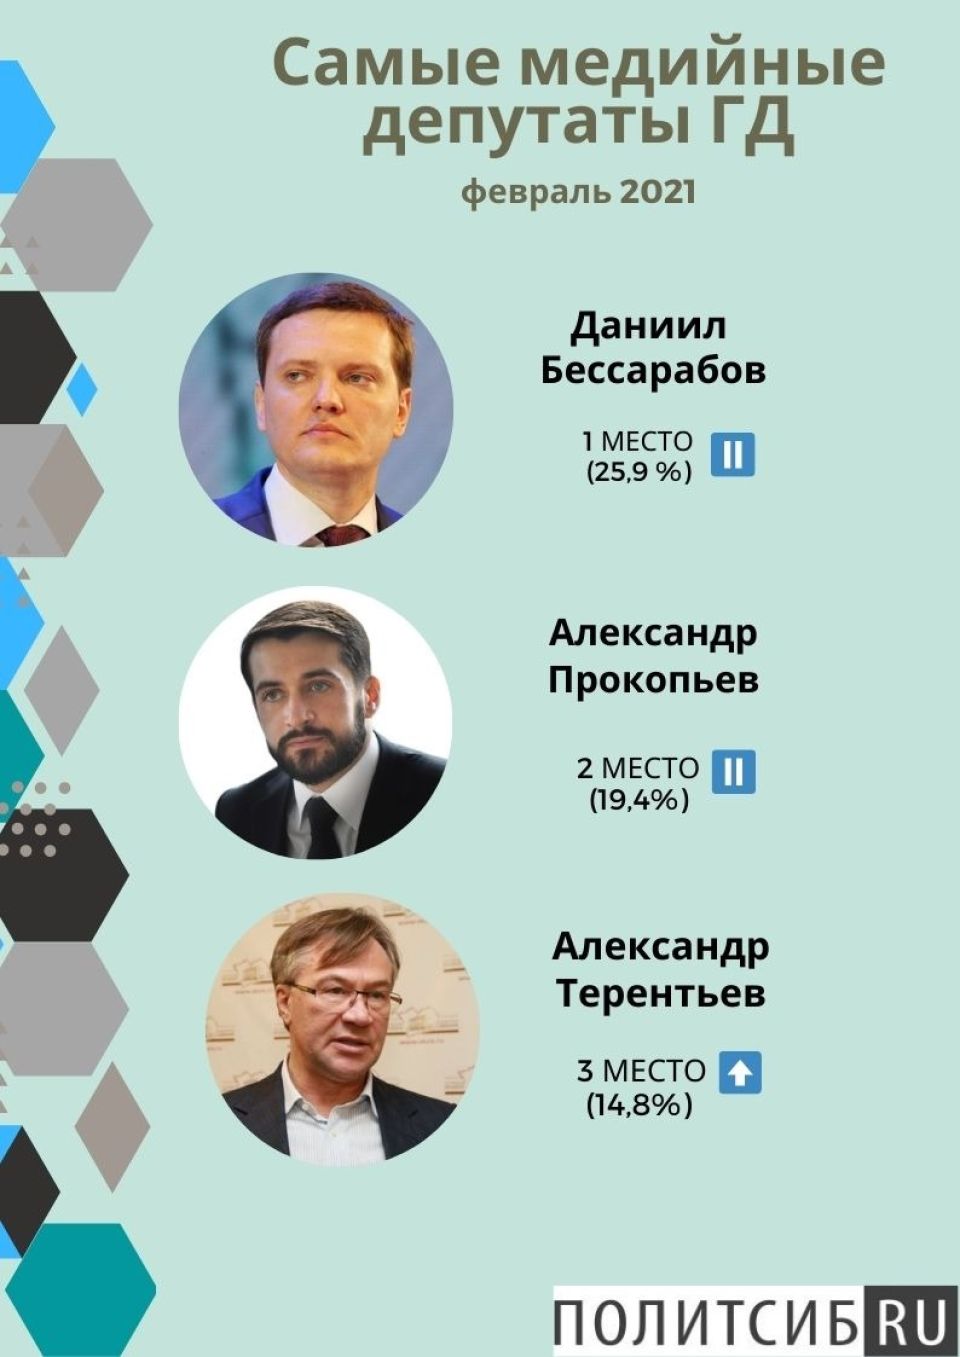 Рейтинг депутатов Госдумы в феврале 2021 года